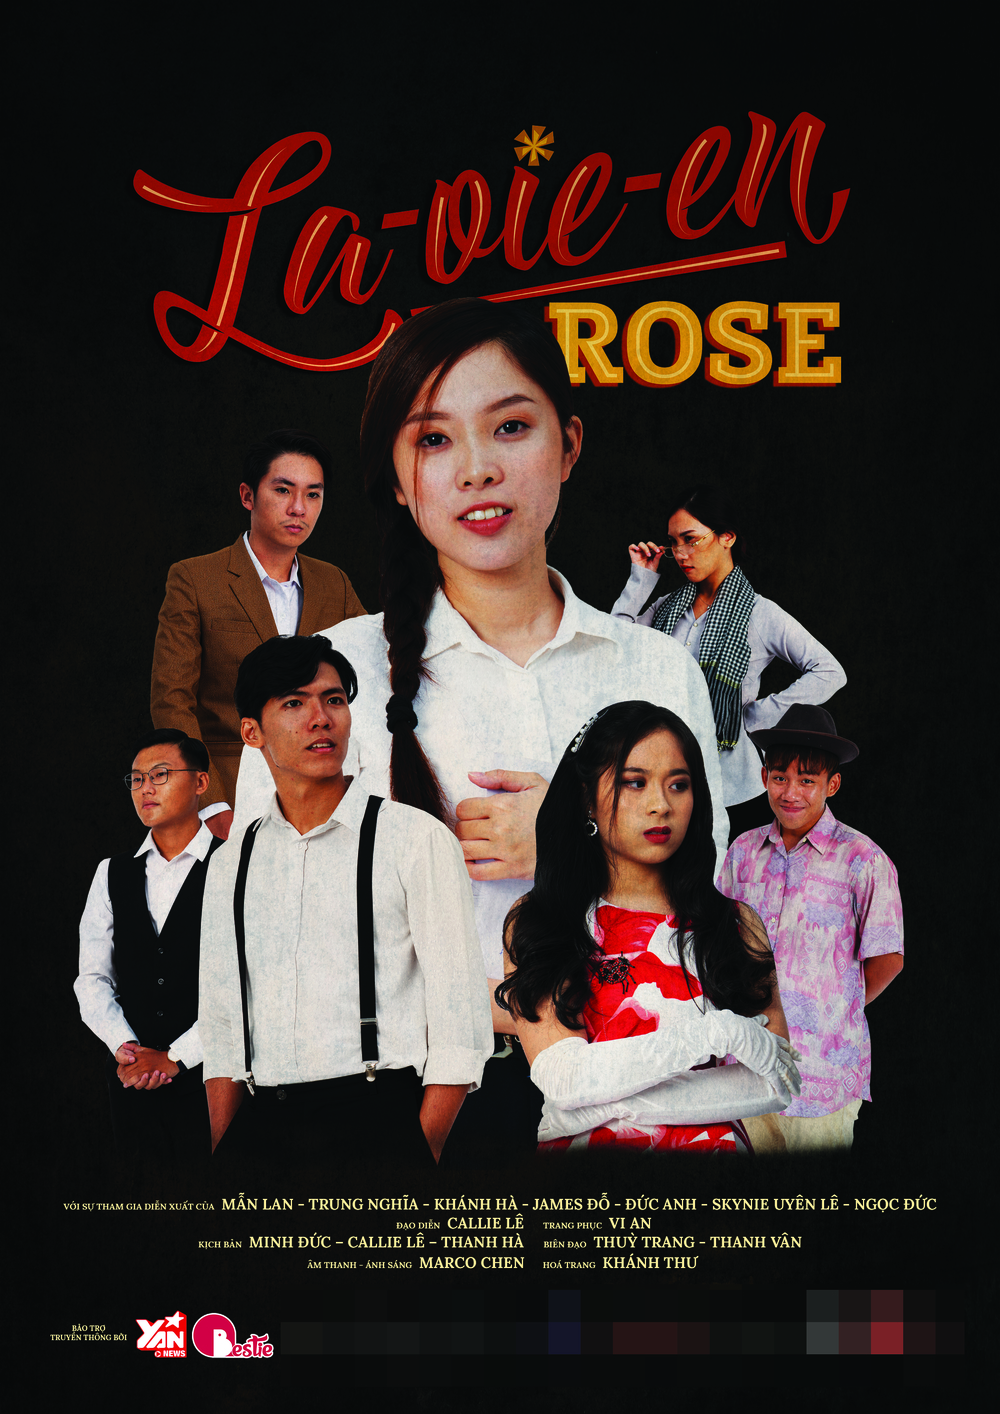   
‘"a Vie En Rose" trong tiếng Việt có nghĩa là “cuộc sống qua lăng kính hoa hồng”, muốn nói rằng bên ngoài dù là sắc hồng nhưng bên trong là cả một câu chuyện đau thương mà chỉ người trải qua mới thấu hiểu được.